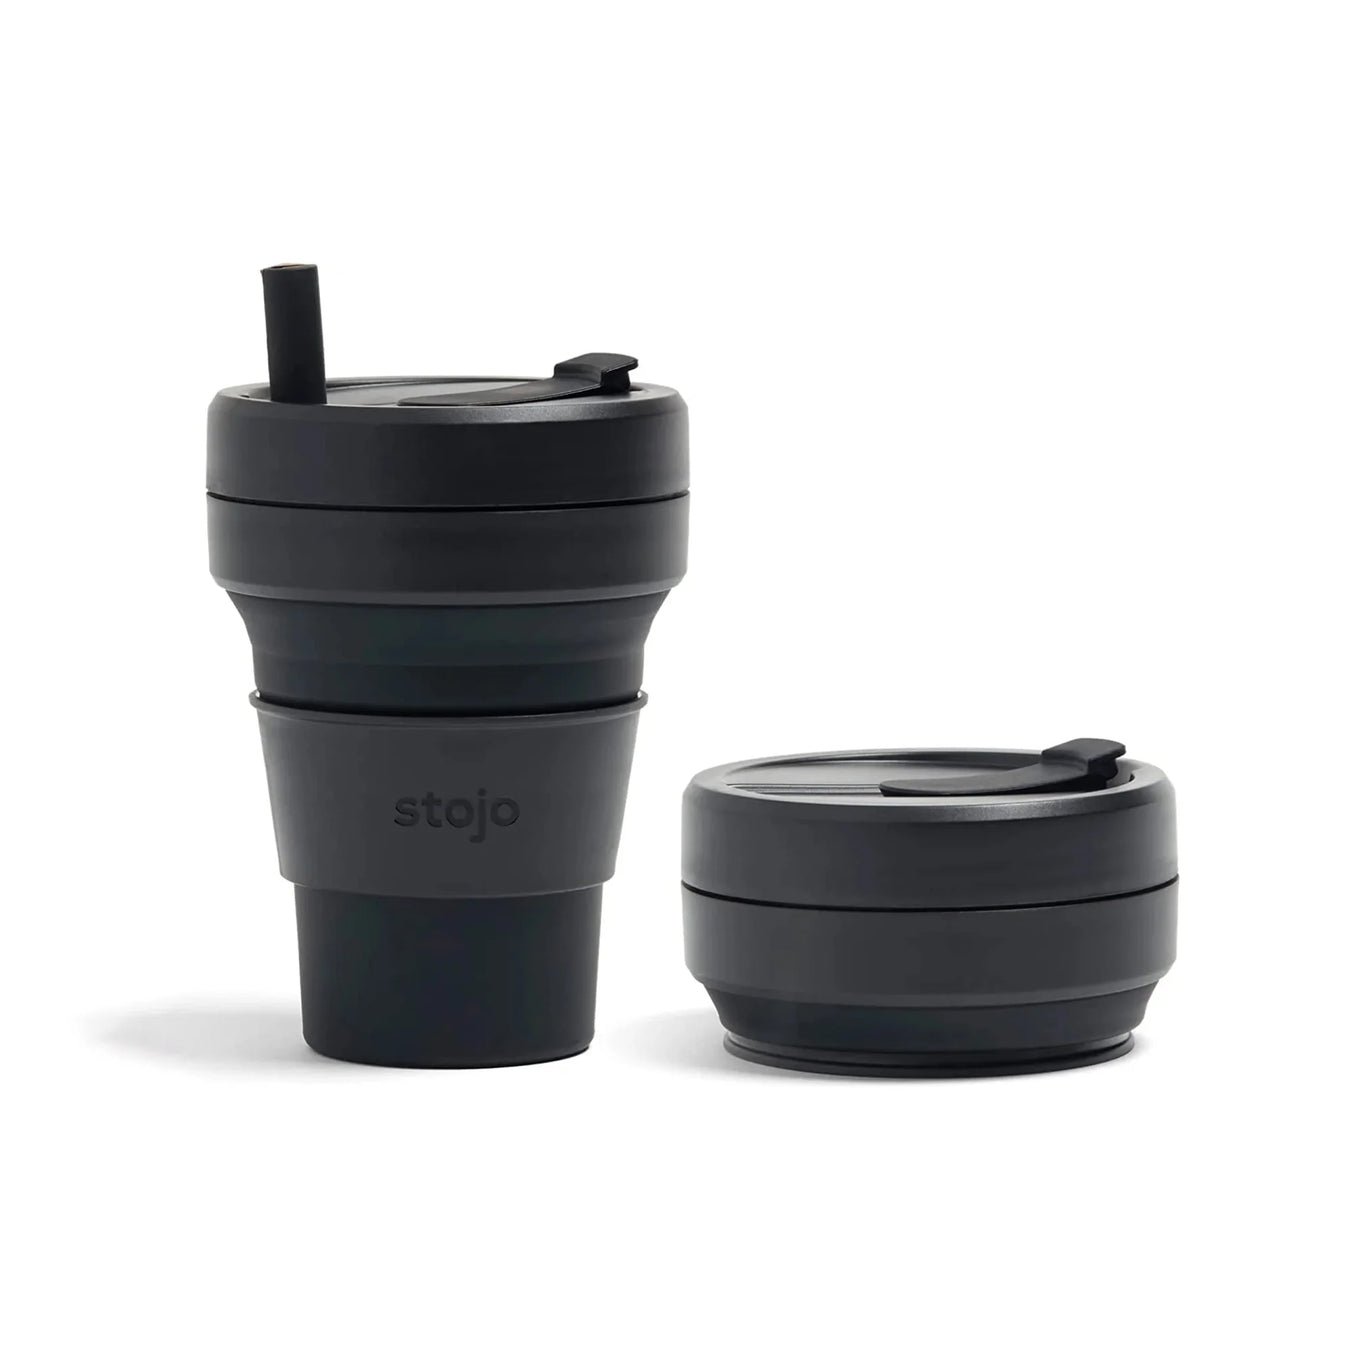 Stojo's Coffee Mugs